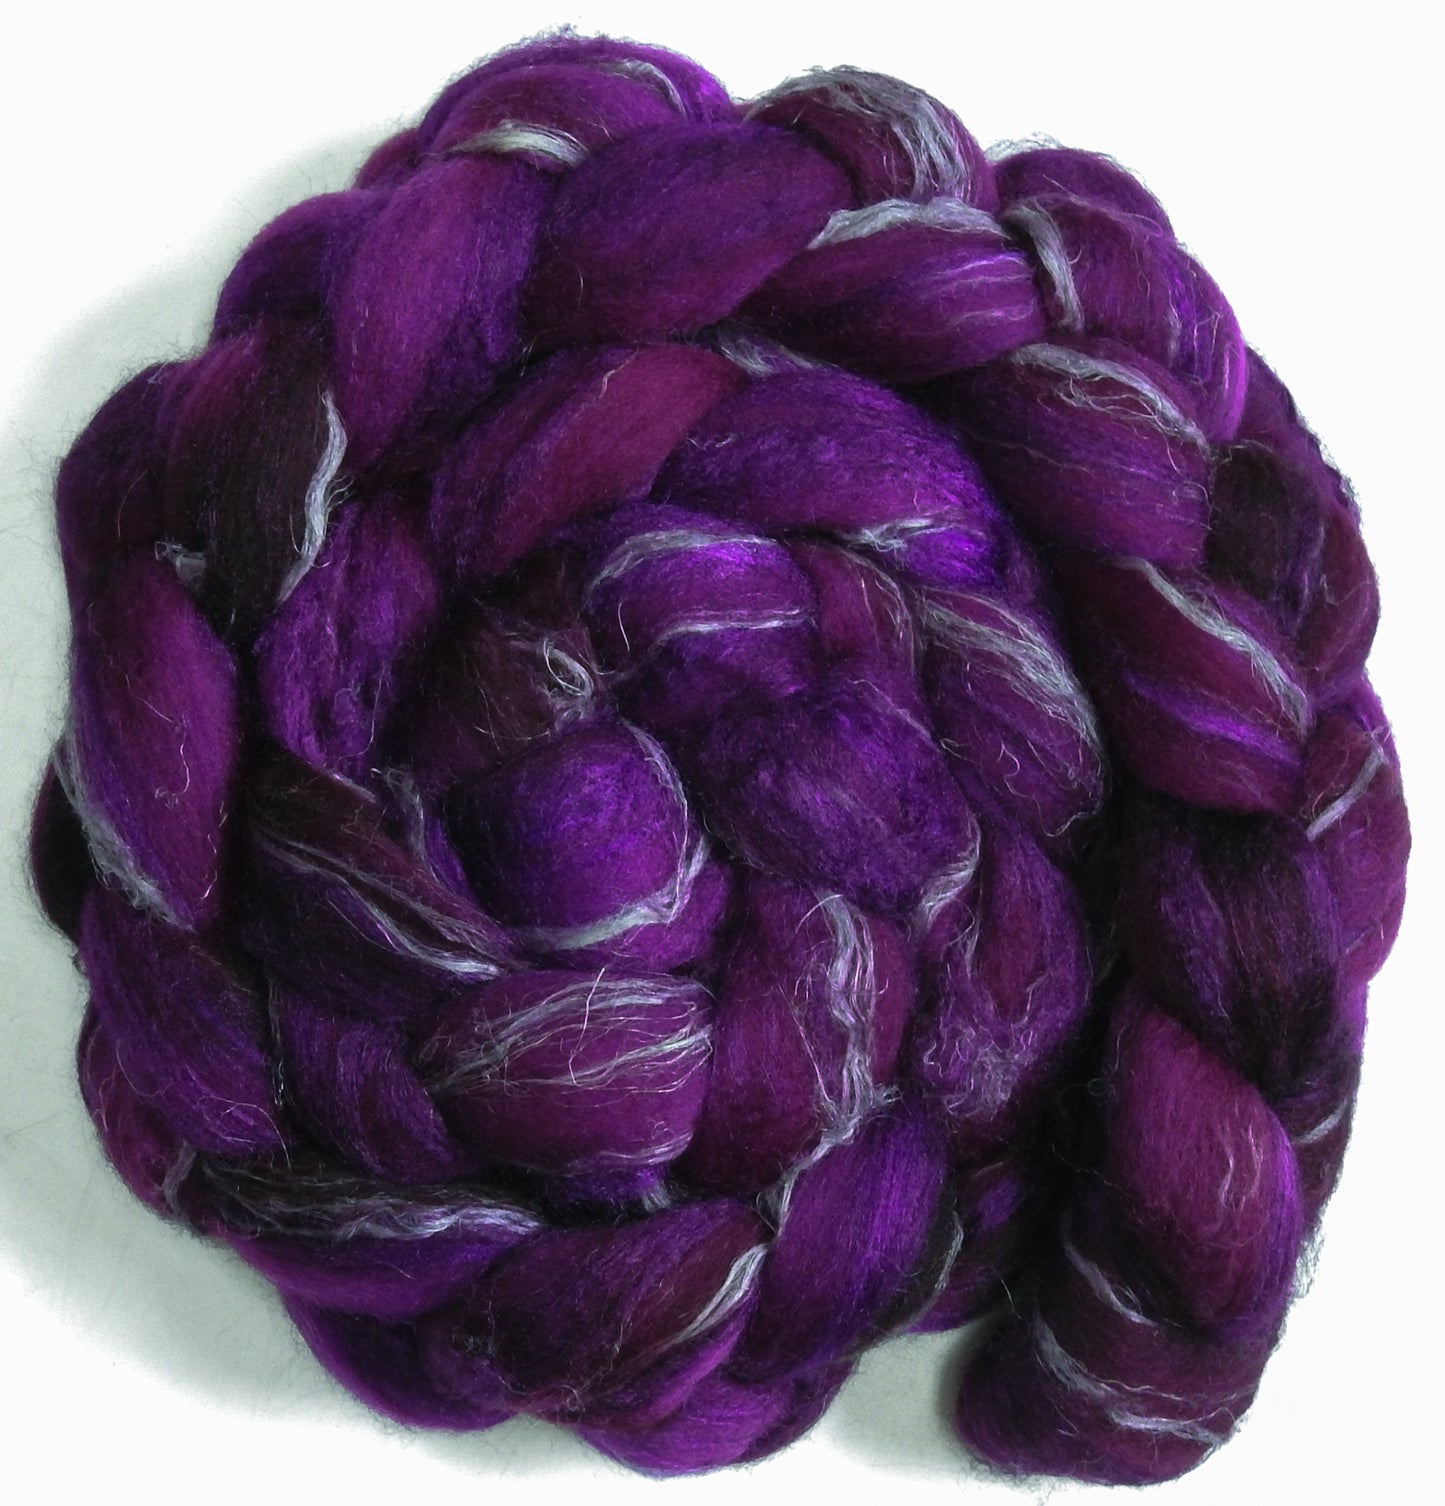 Pokeberry - Merino/ Tussah Silk/ Natural Flax (50/25/25)